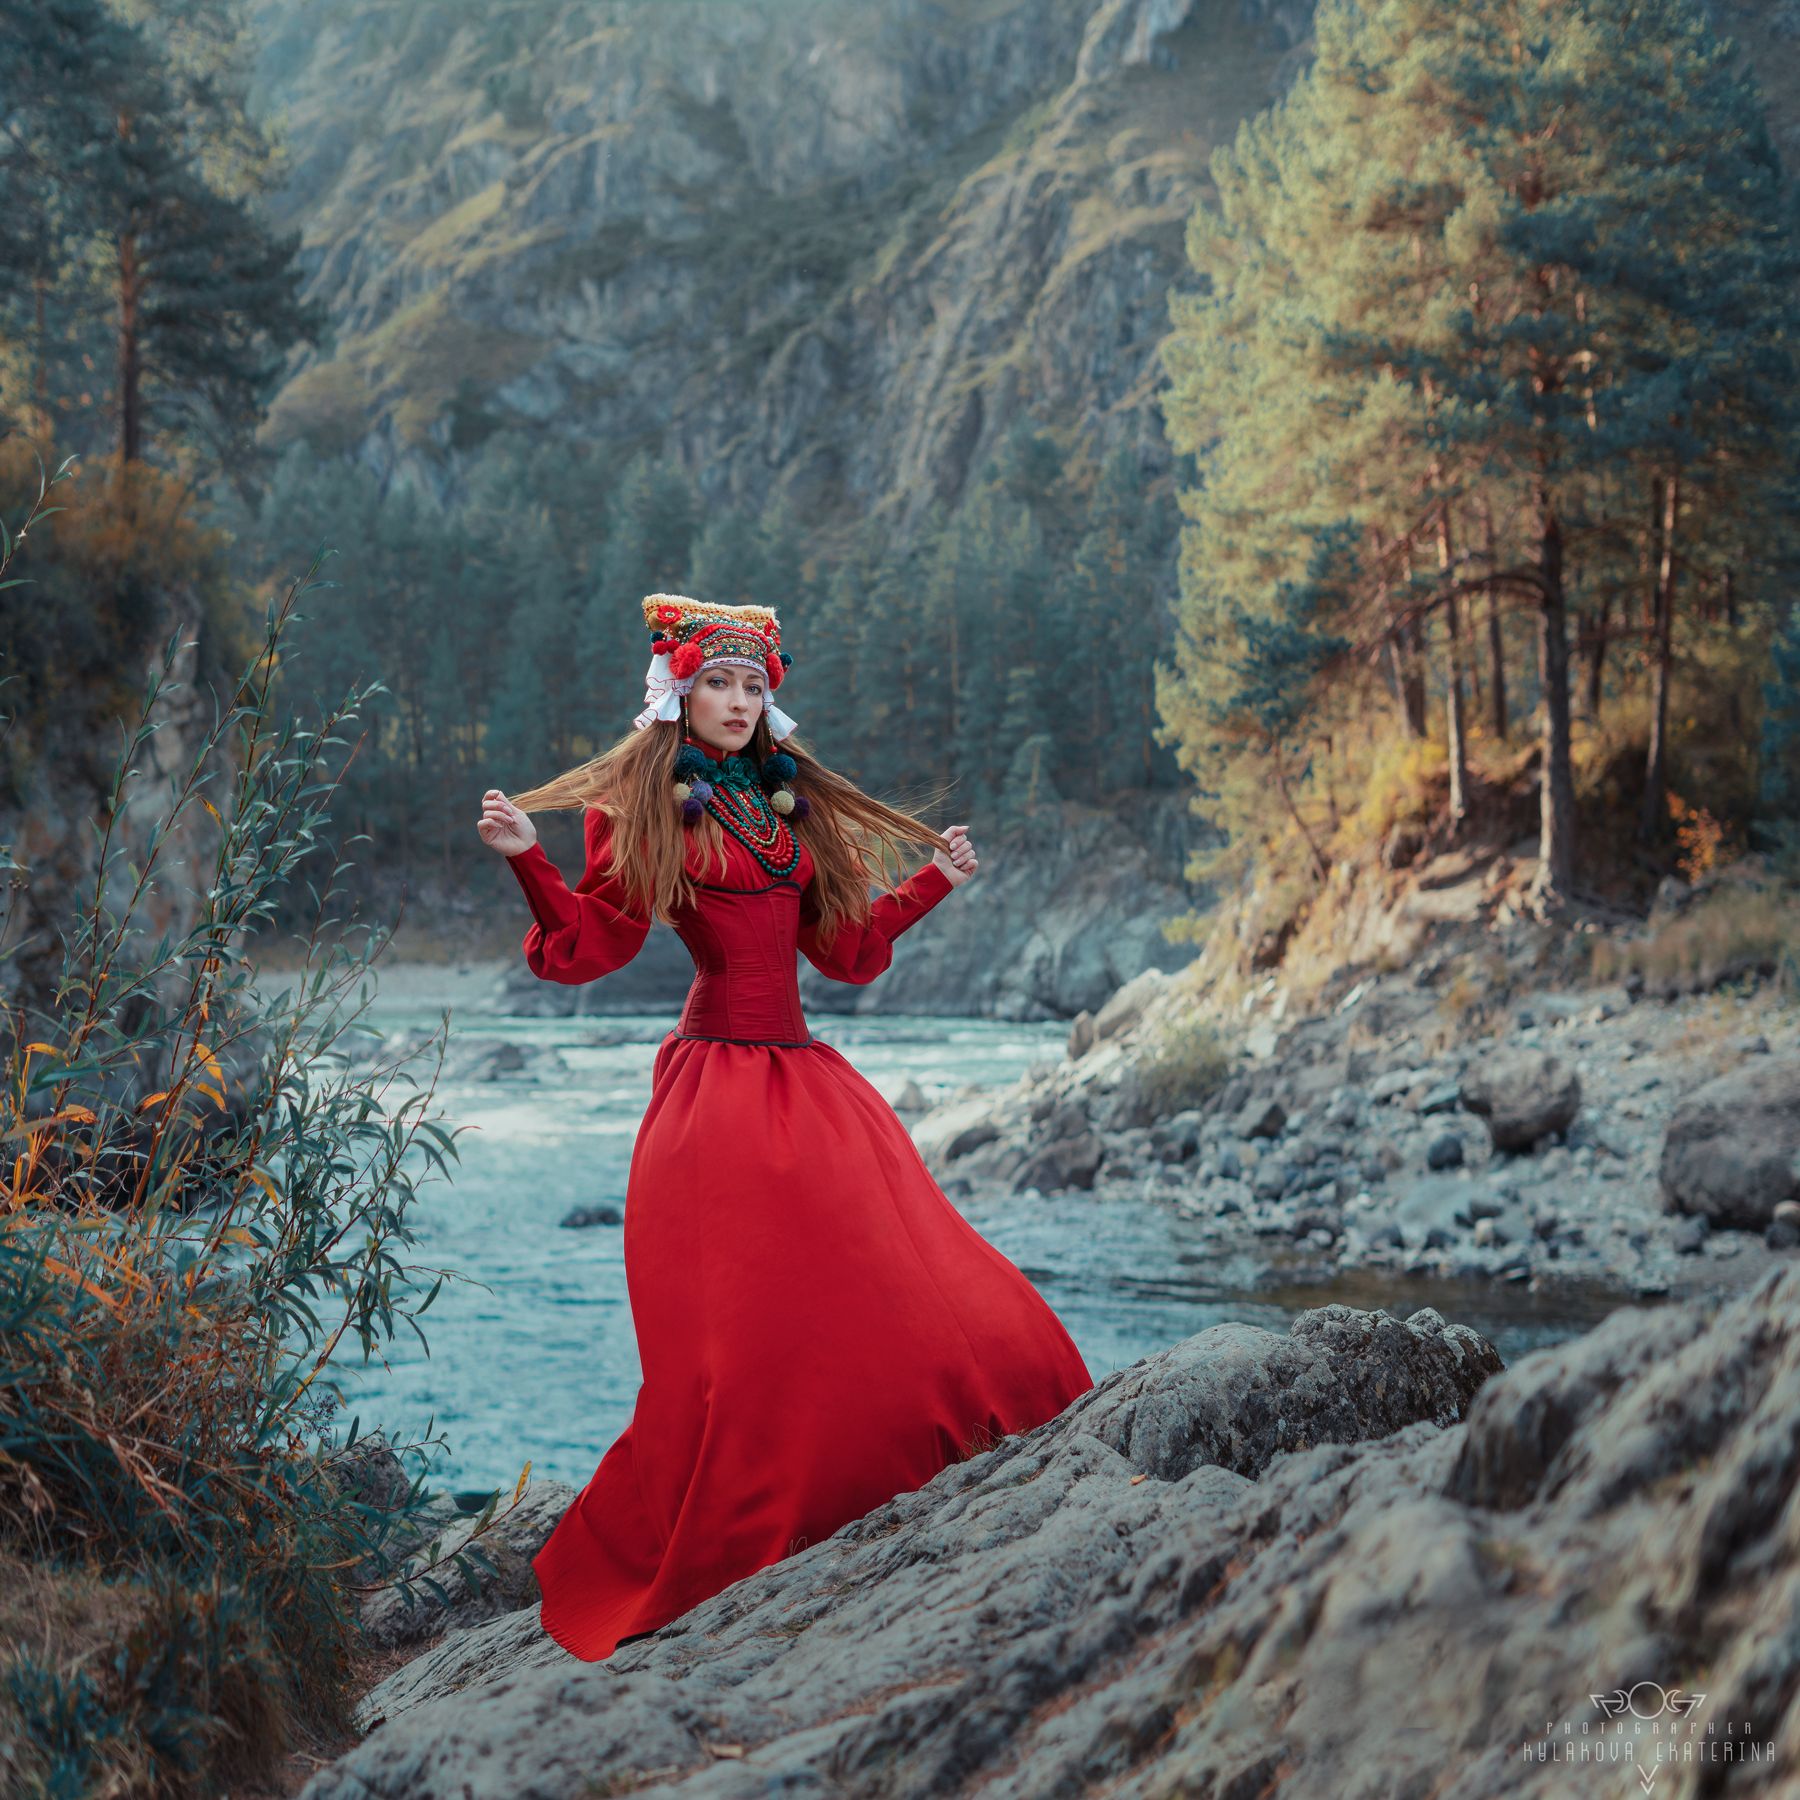 горы, река, осень, русский стиль, национальный, костюм, платье, красный, алтай, девушка, модель, Екатерина Кулакова